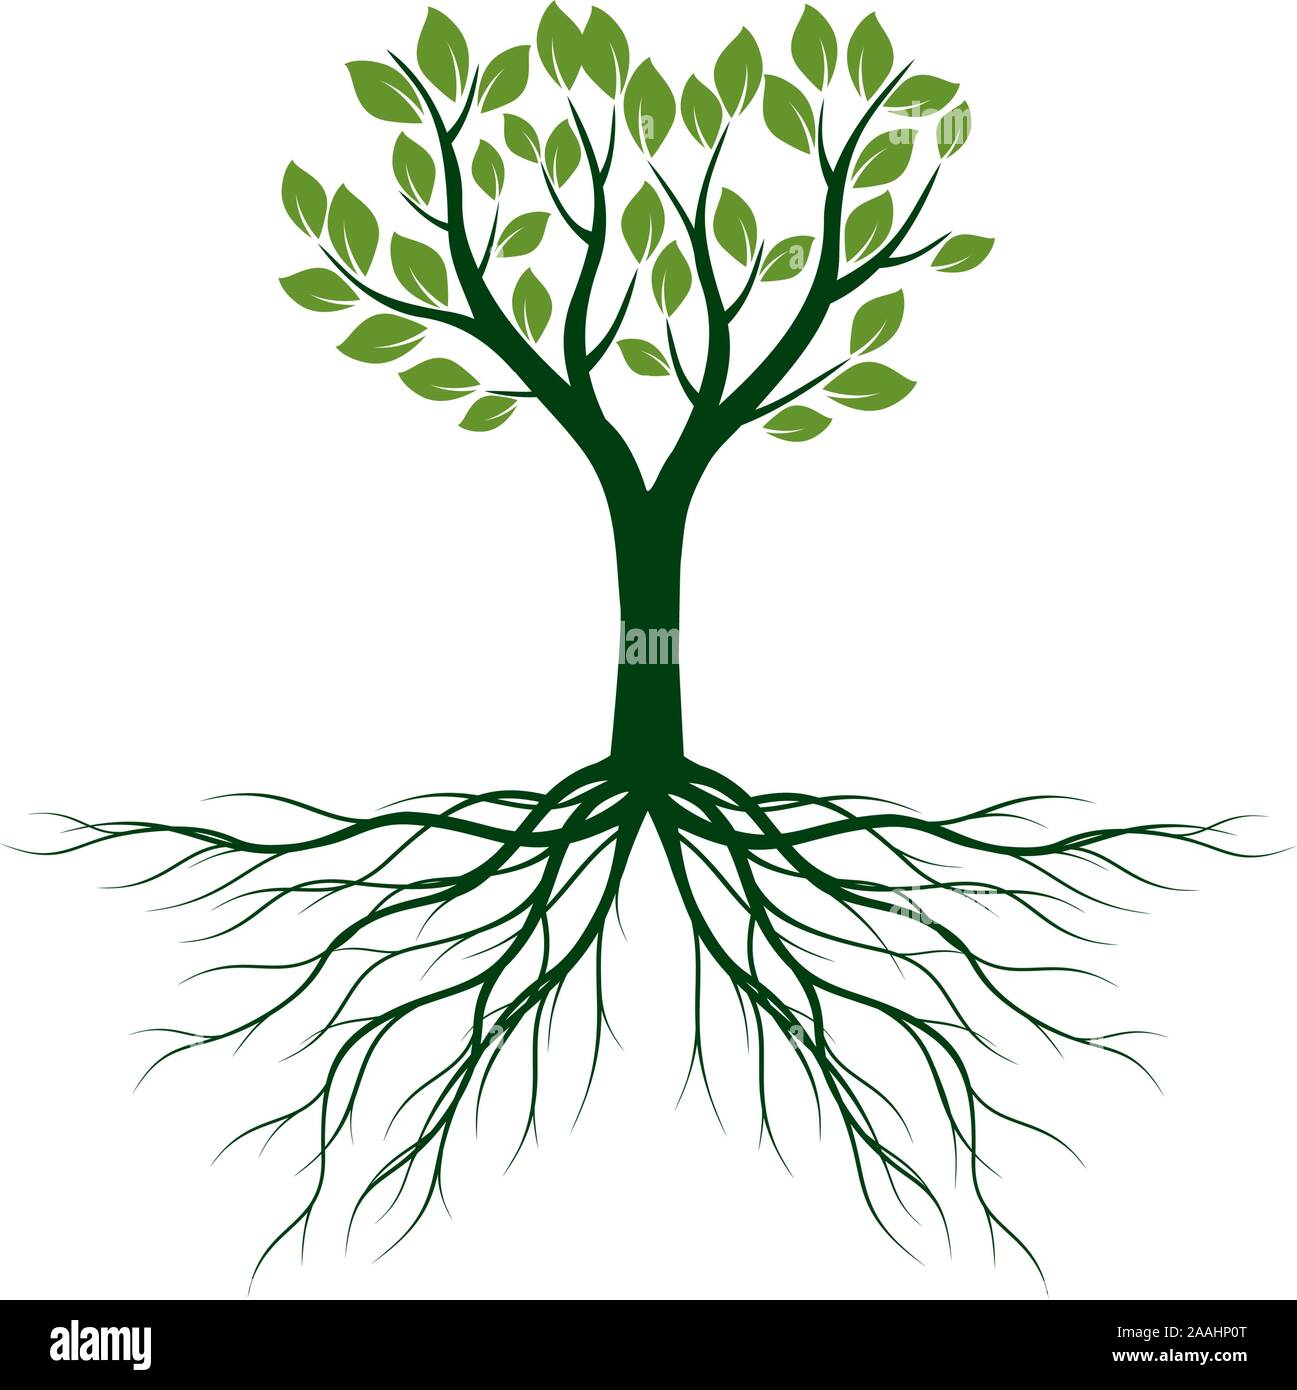 Gruner Baum Mit Blattern Und Wurzeln Vektor Kontur Abbildung Auf Weissen Hintergrund Pflanze Im Garten Stock Vektorgrafik Alamy